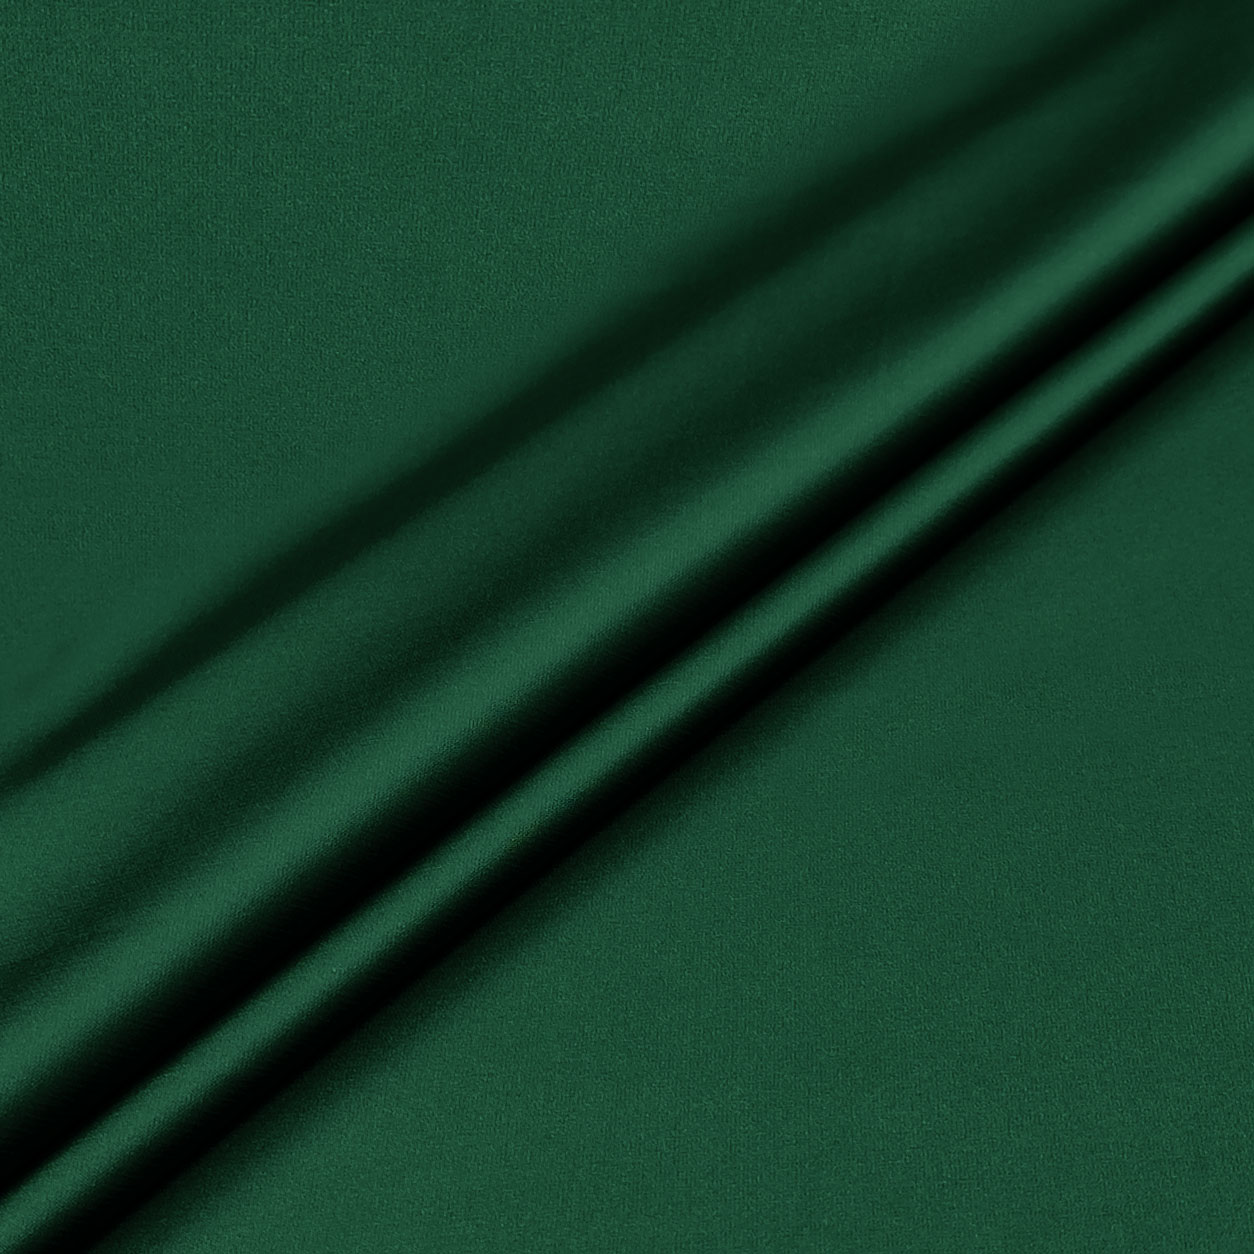 rasetto-effetto-seta-verde-scuro-dettaglio